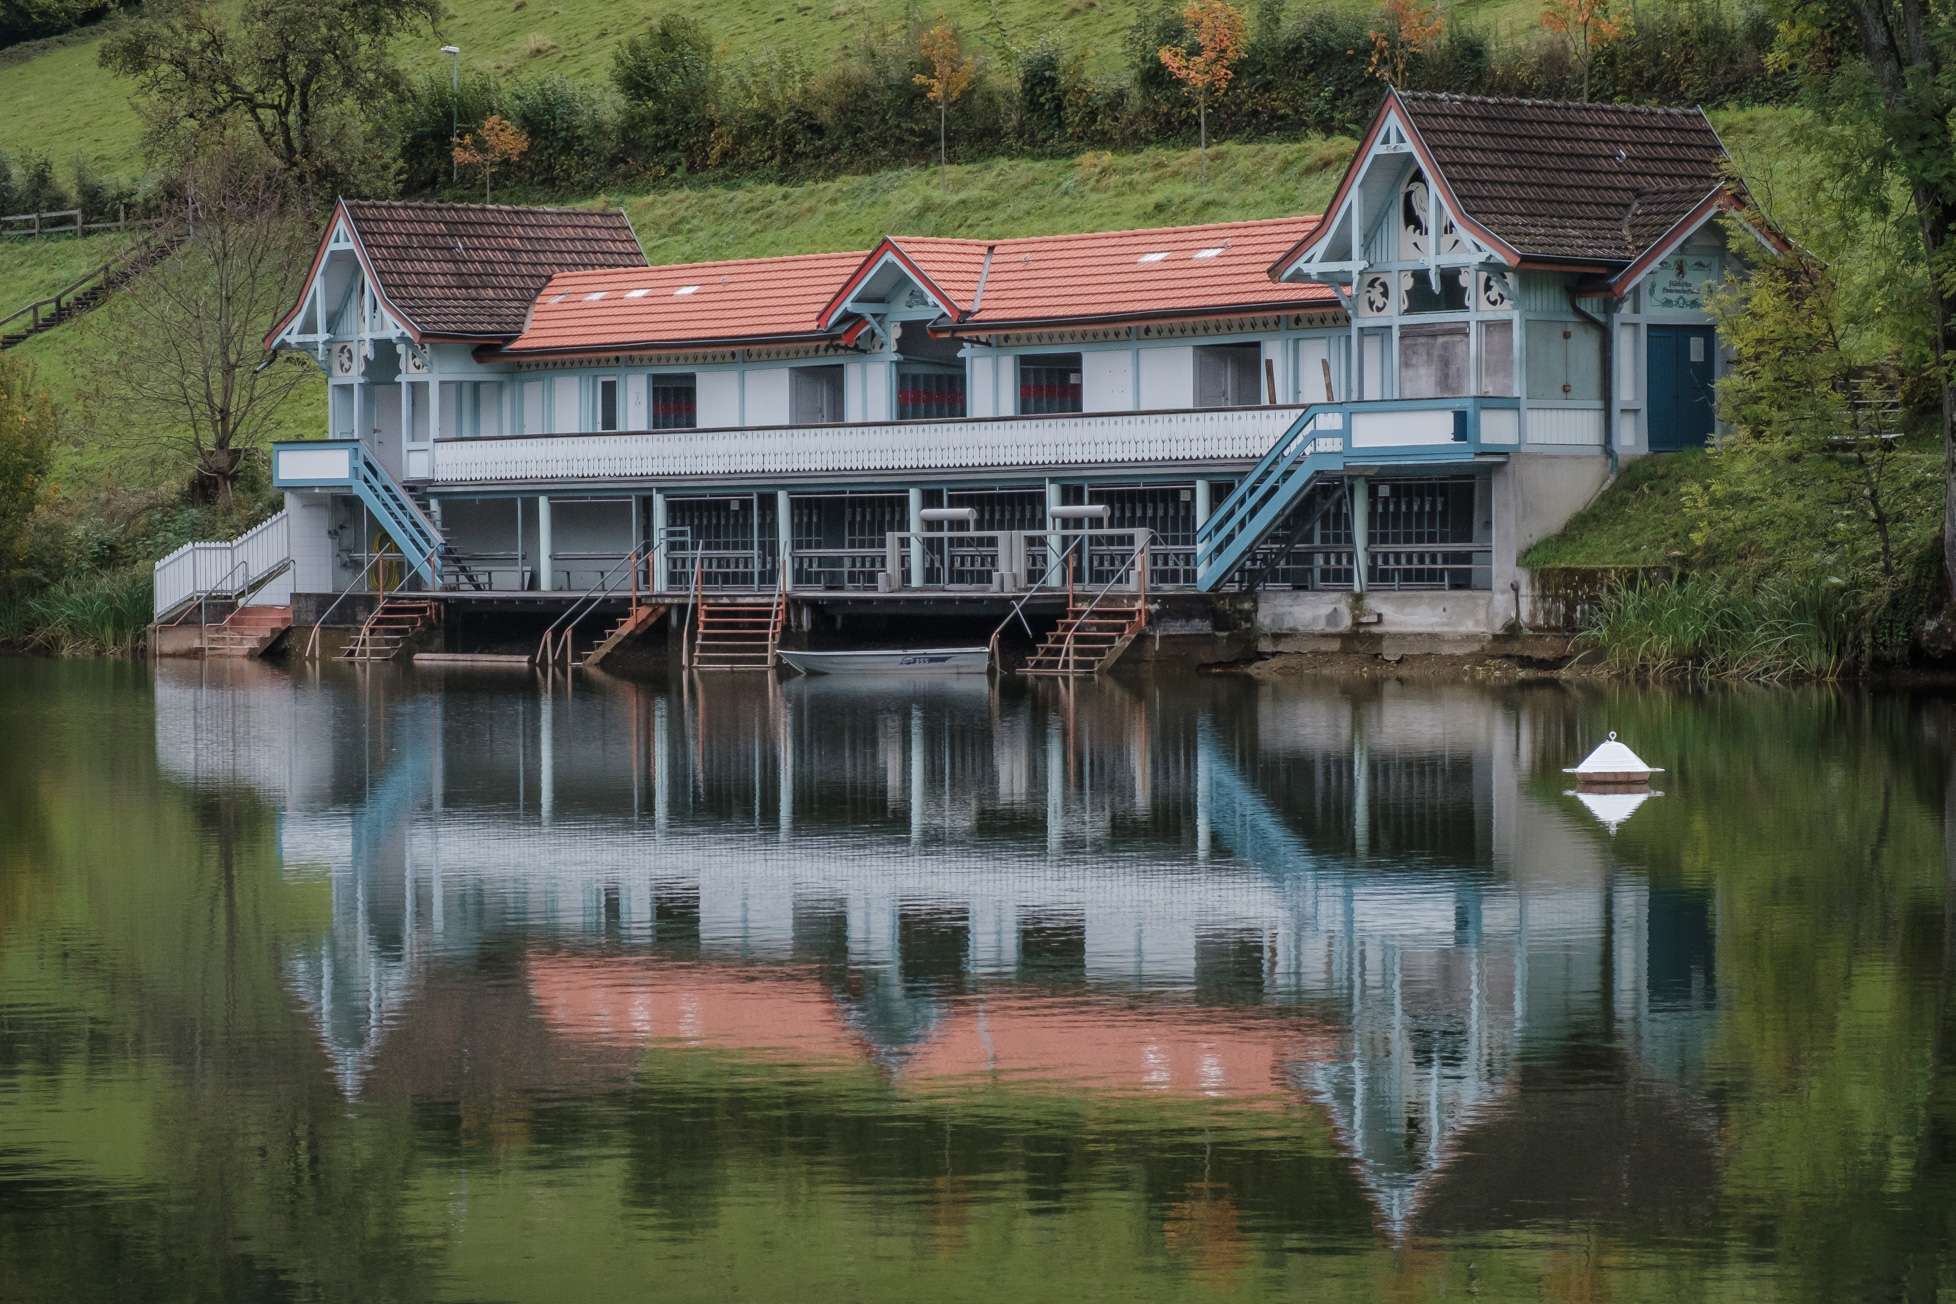 Vintage boat house at Drei Weieren in St. Gallen